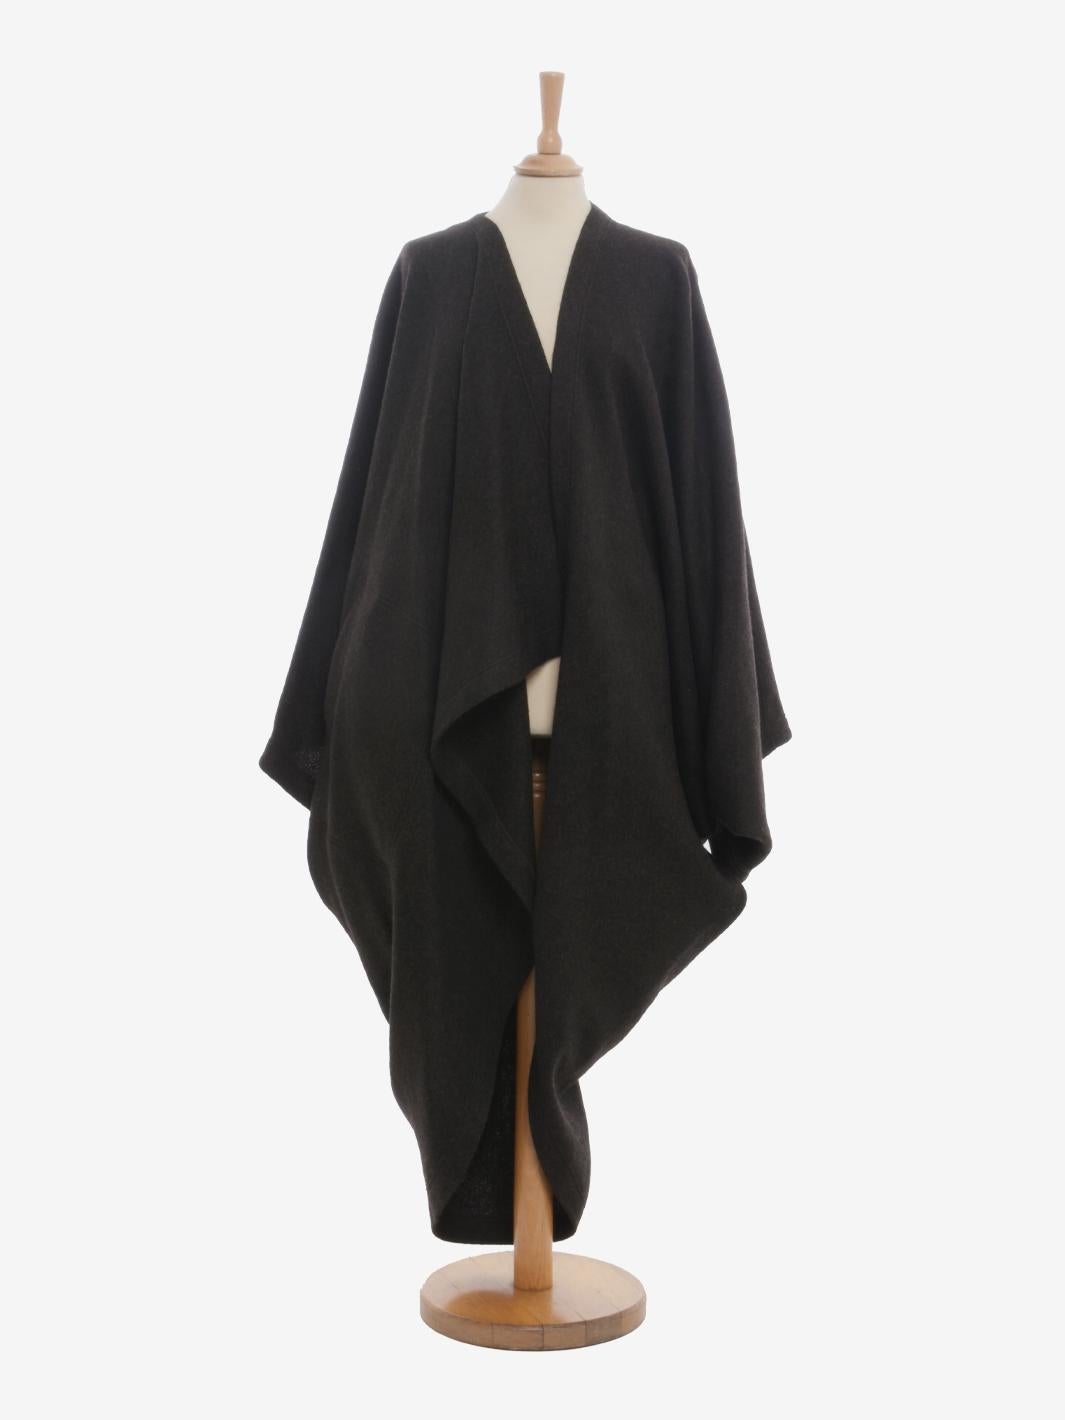 Le manteau Dolman en laine d'Issey Miyake est un vêtement de la collection Permanente lancée en 1985, connue pour ses formes et tissus originaux utilisés dans les collections précédentes d'Issey Miyake. Les vêtements d'extérieur se caractérisent par